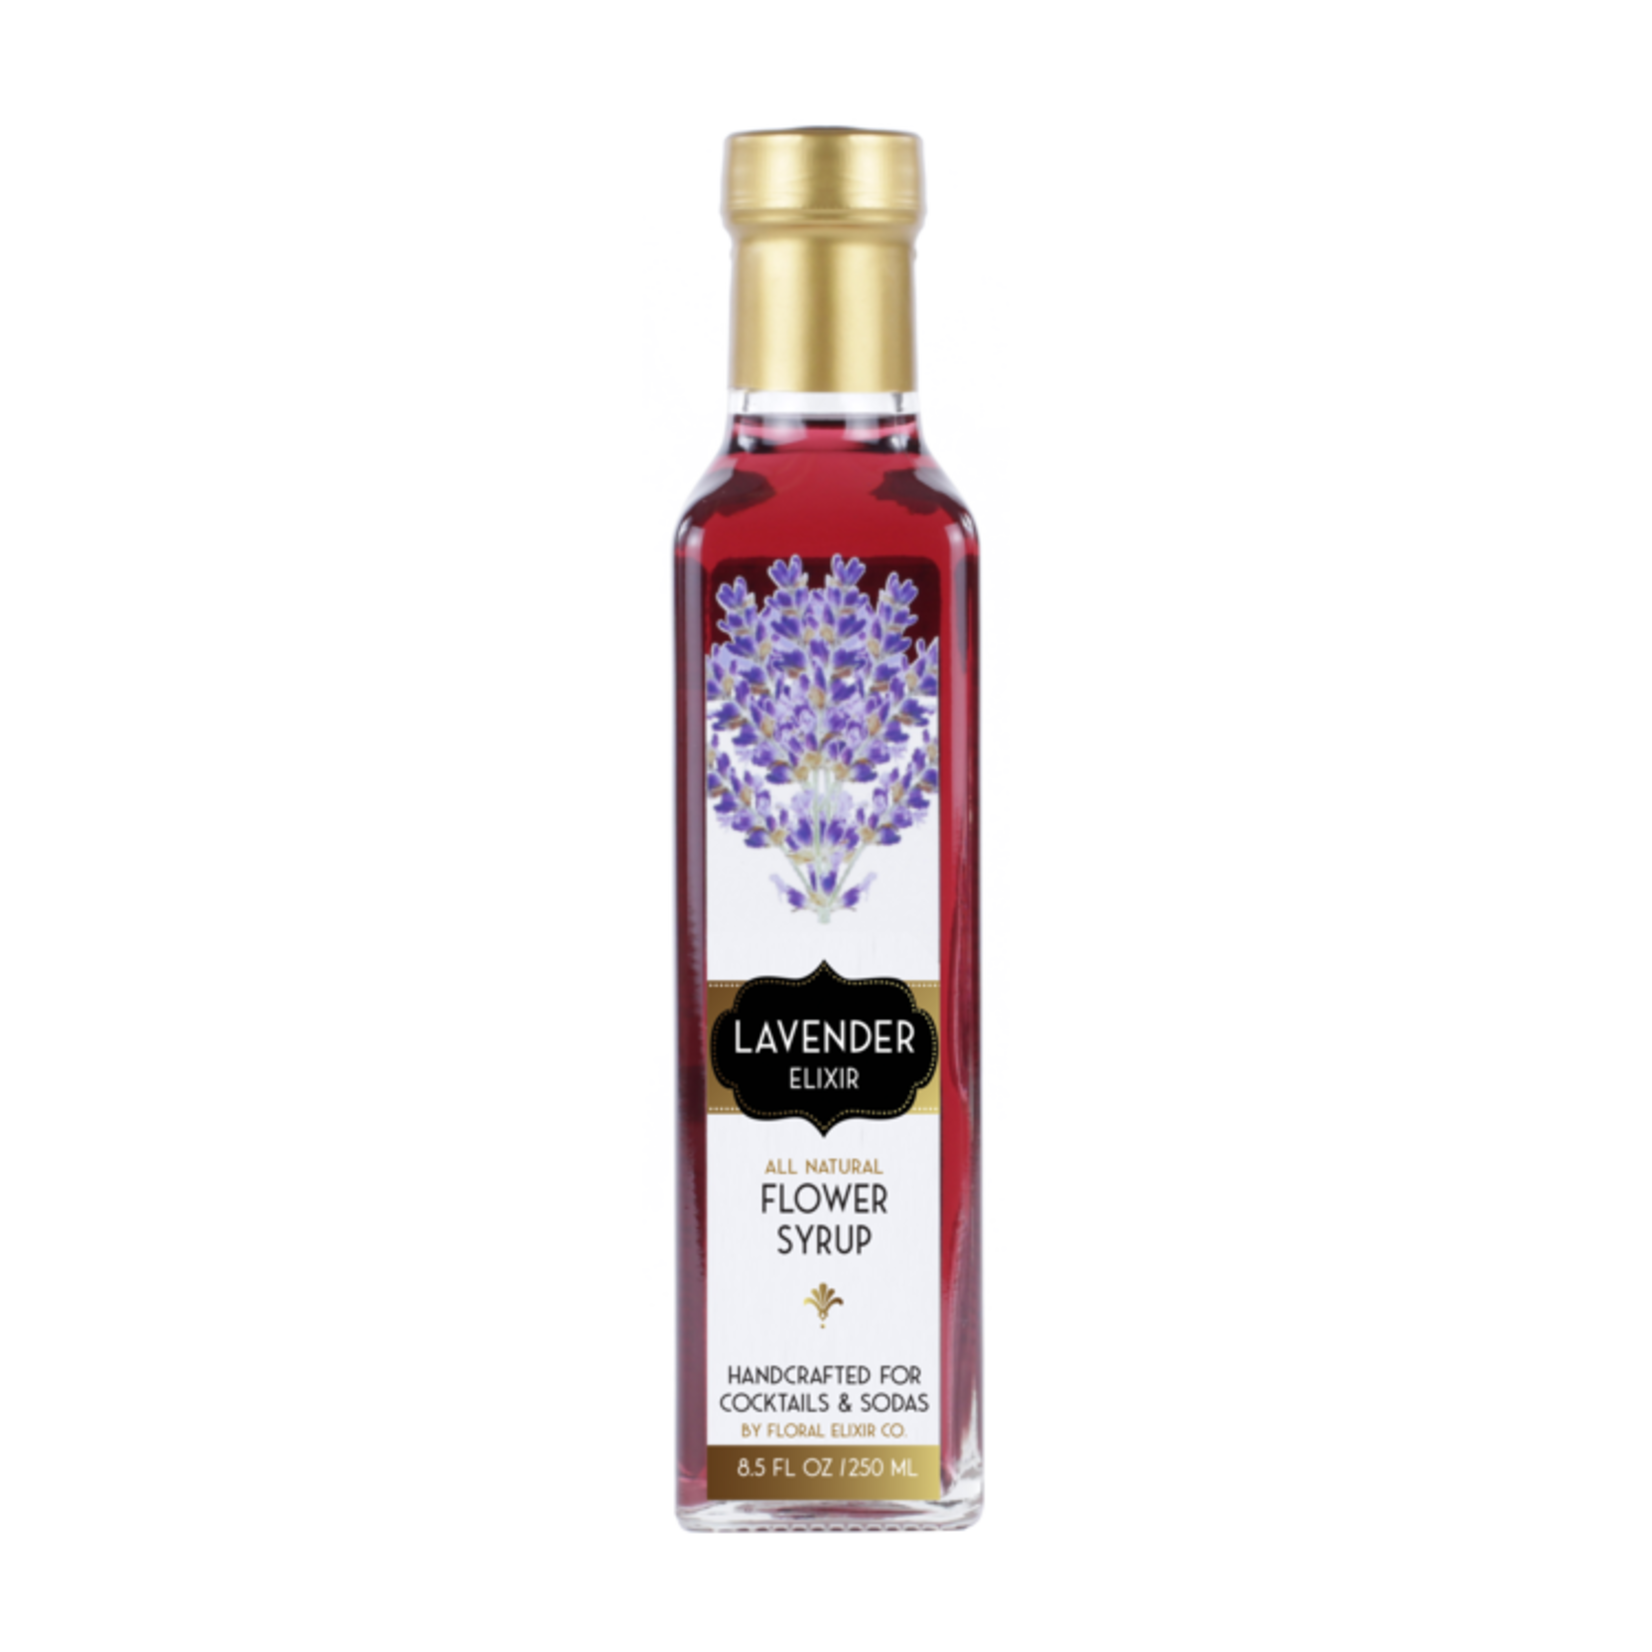 Floral Elixir Company Lavender Elixir